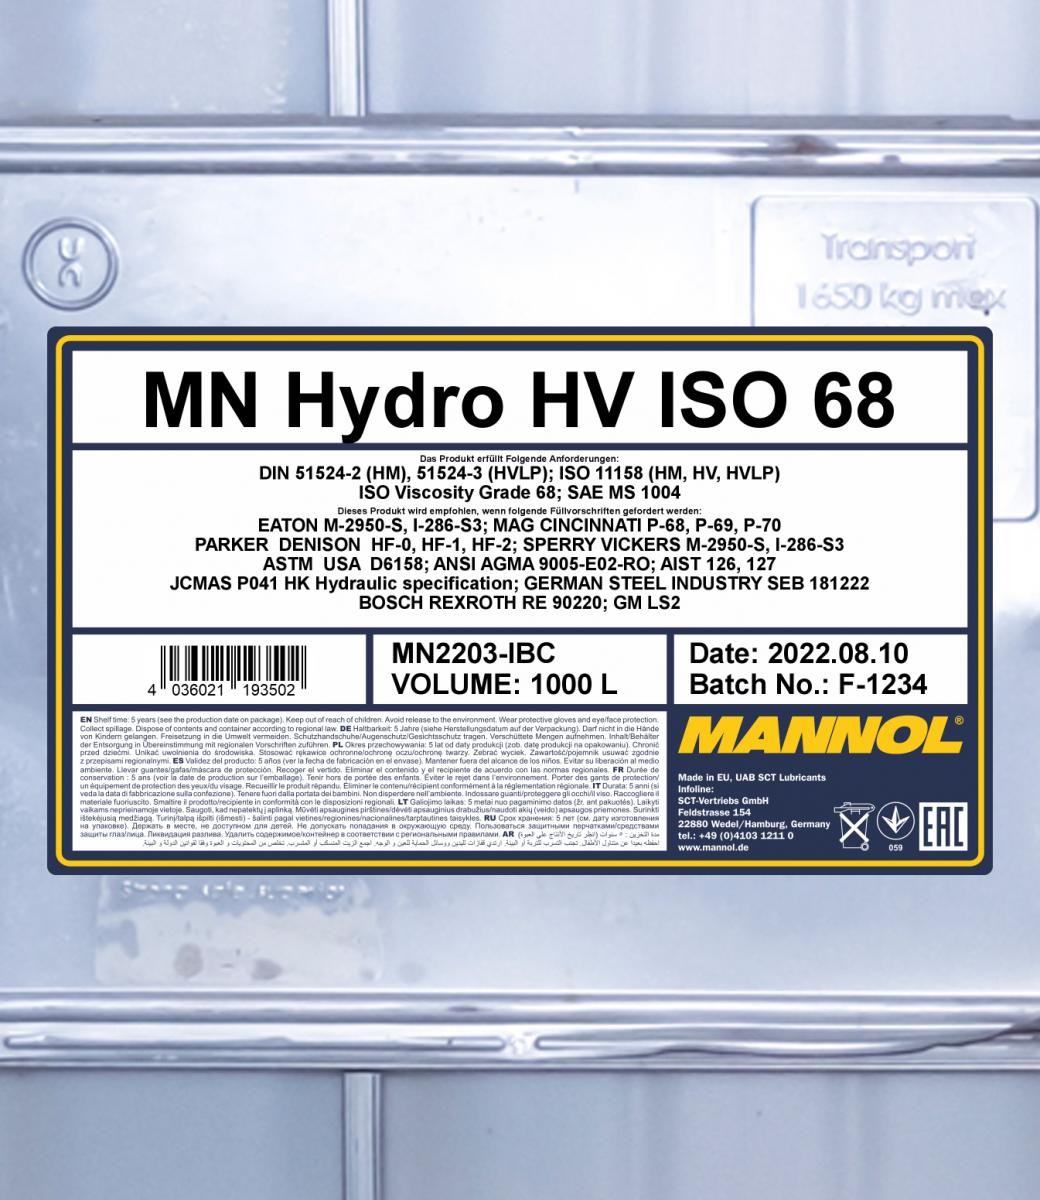 MANNOL Central Hydraulic Oil MN2203-IBC